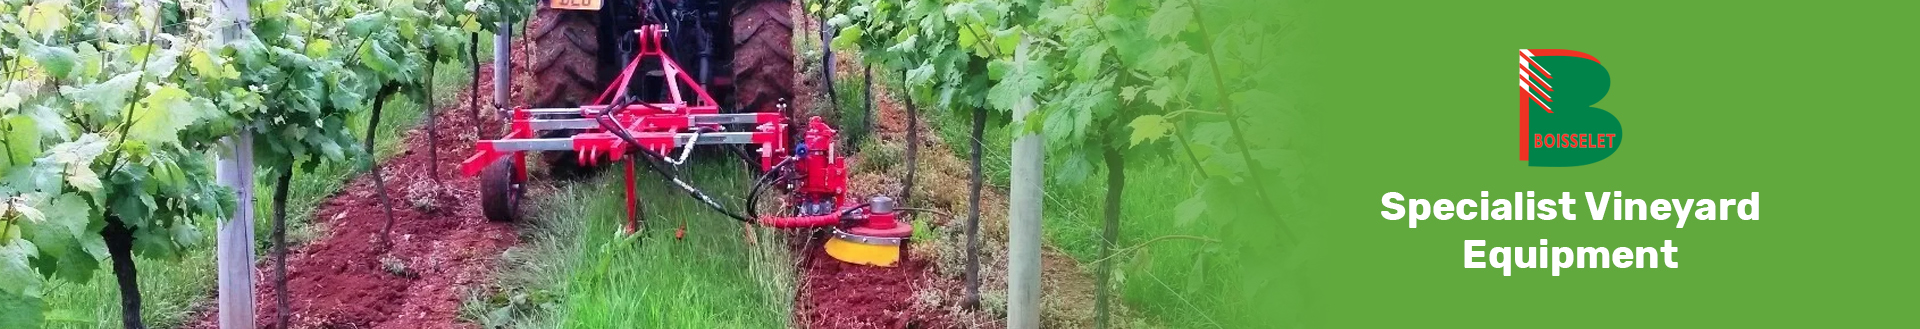 Boisselet vineyard equipment blenheim